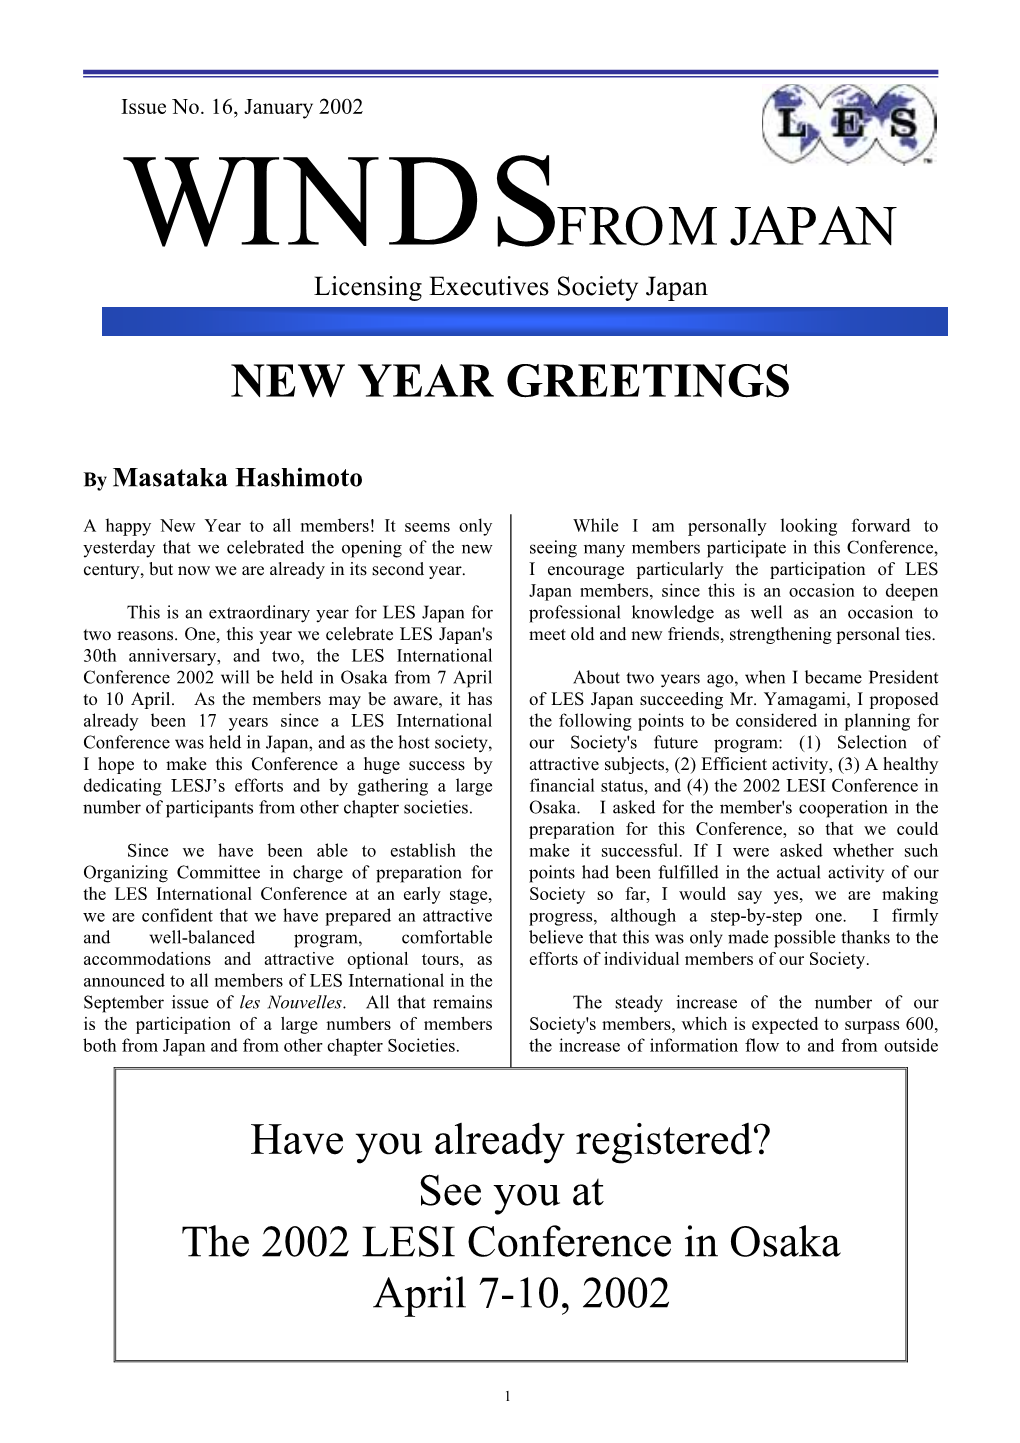 Windsfrom Japan